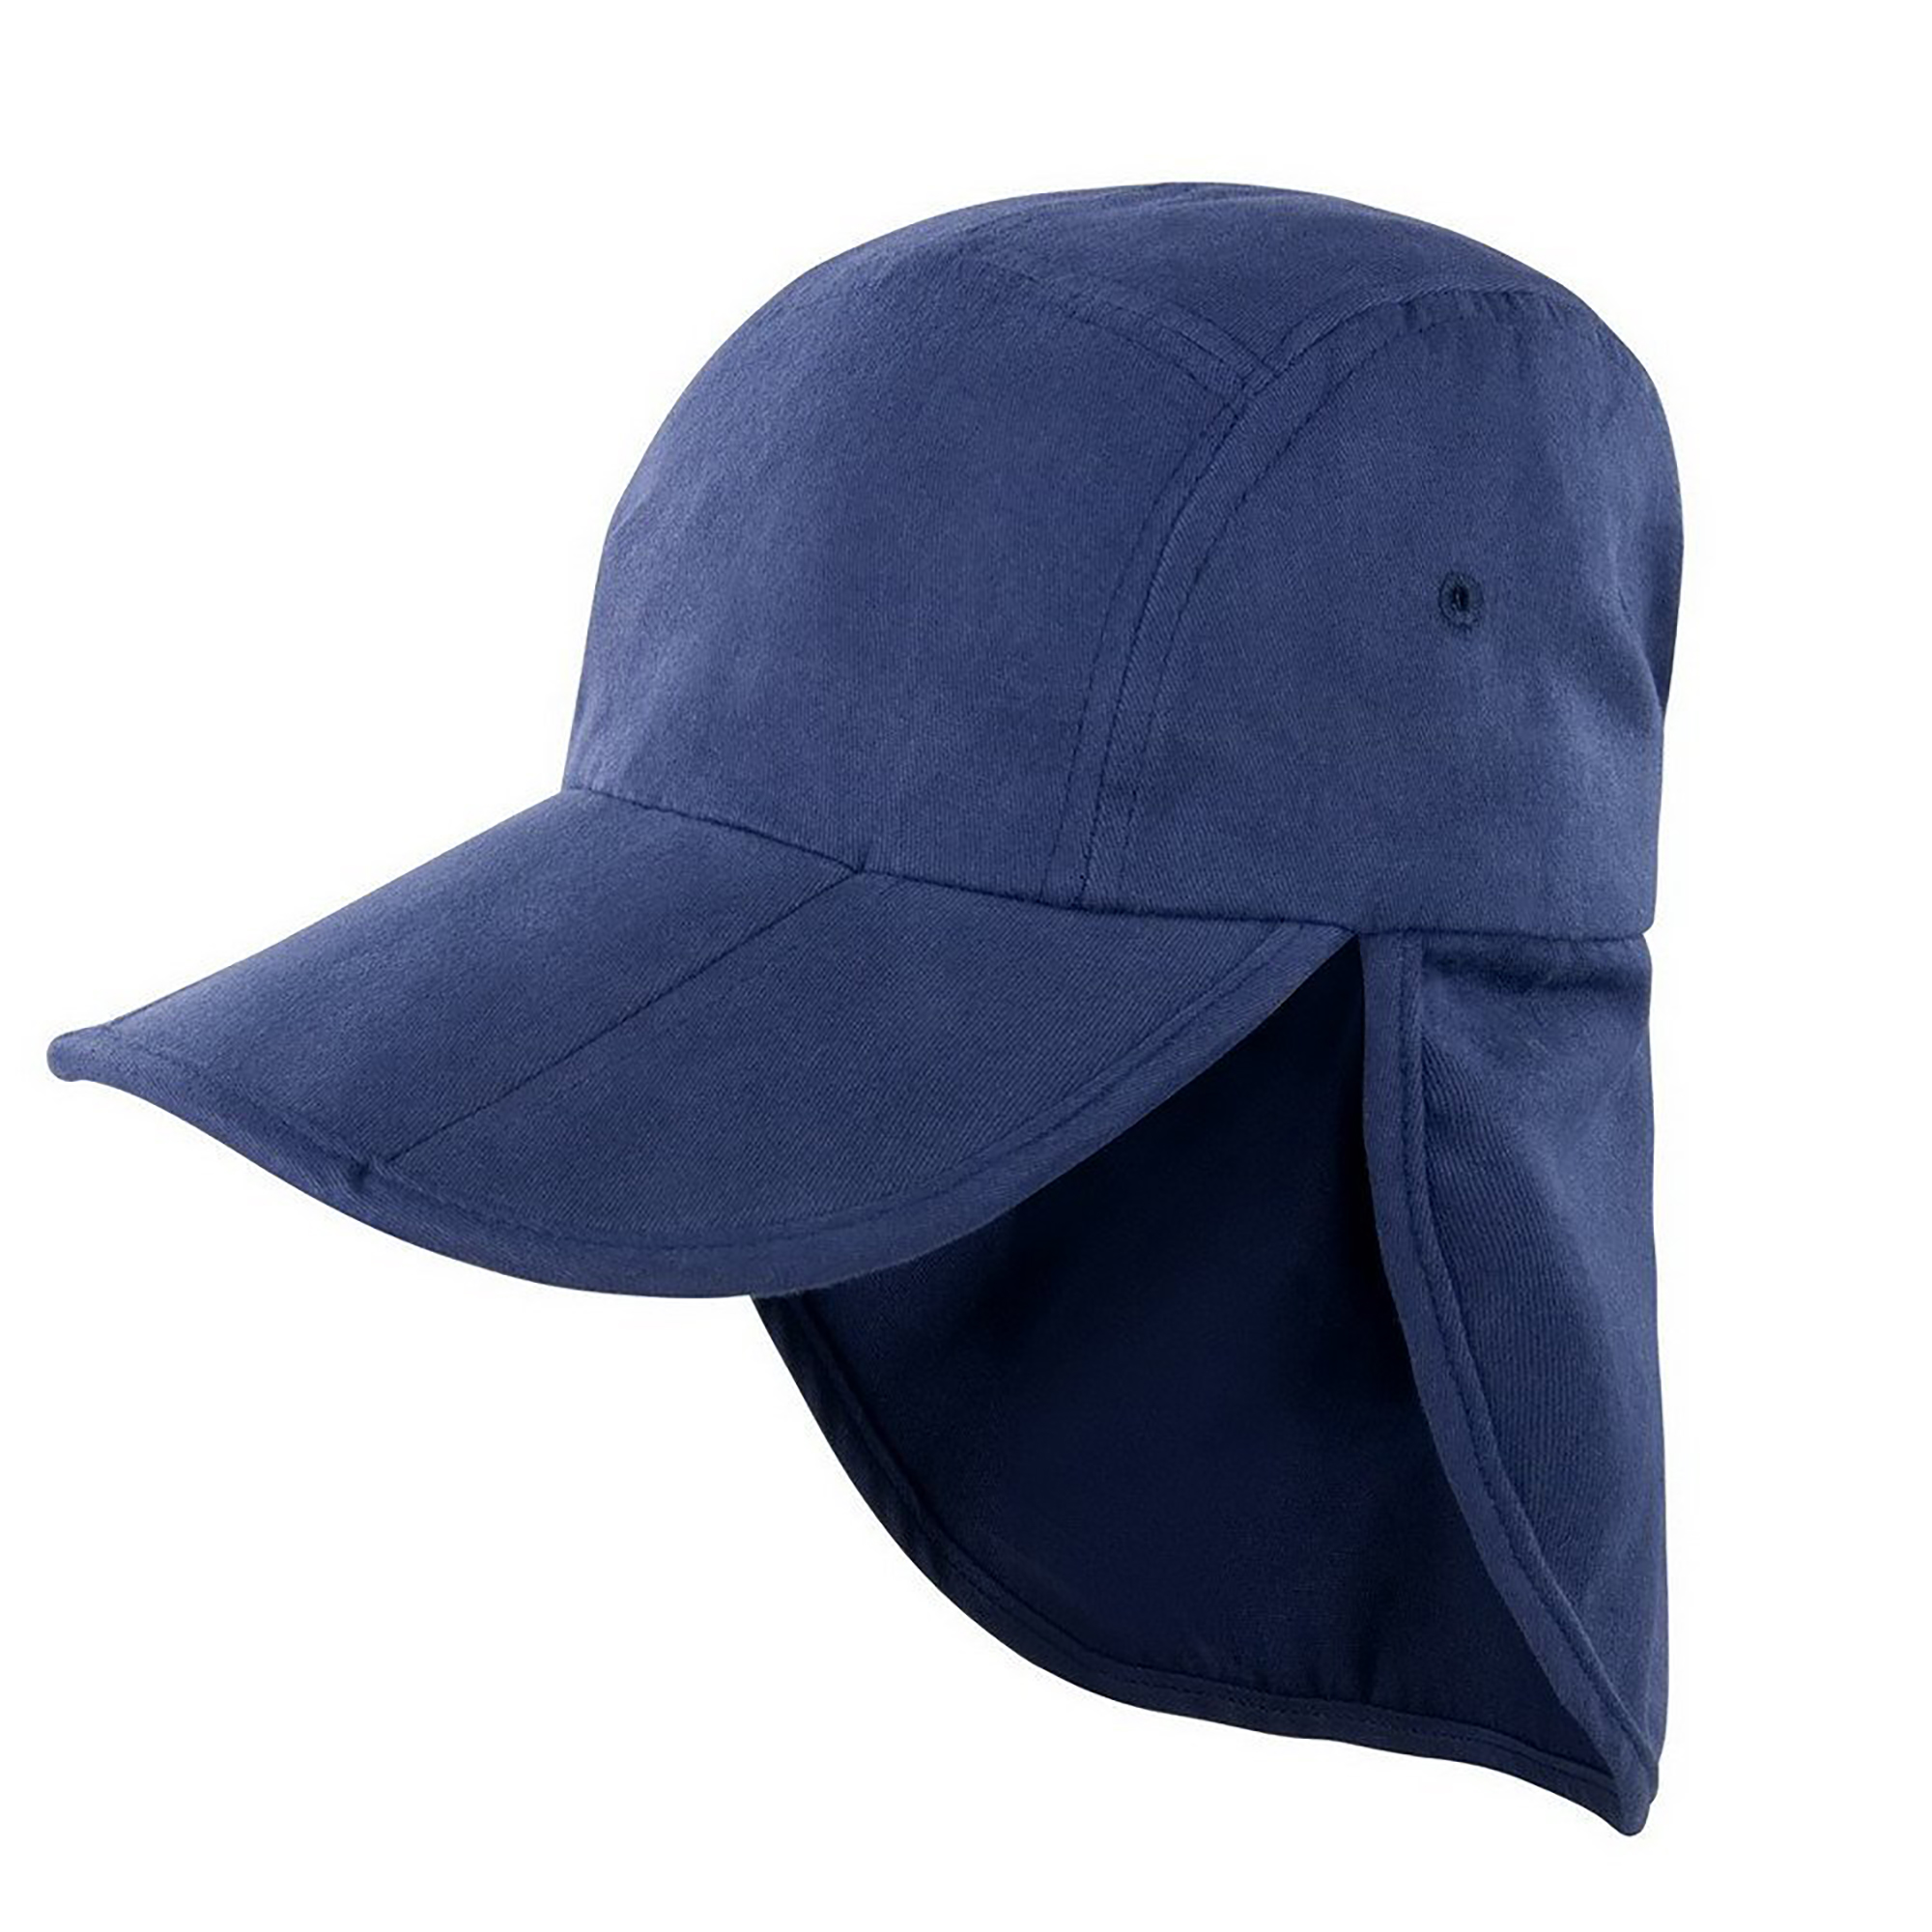 Result Headwear Kids/Childrens Unisex Folding Legionnaire Hat Cap 